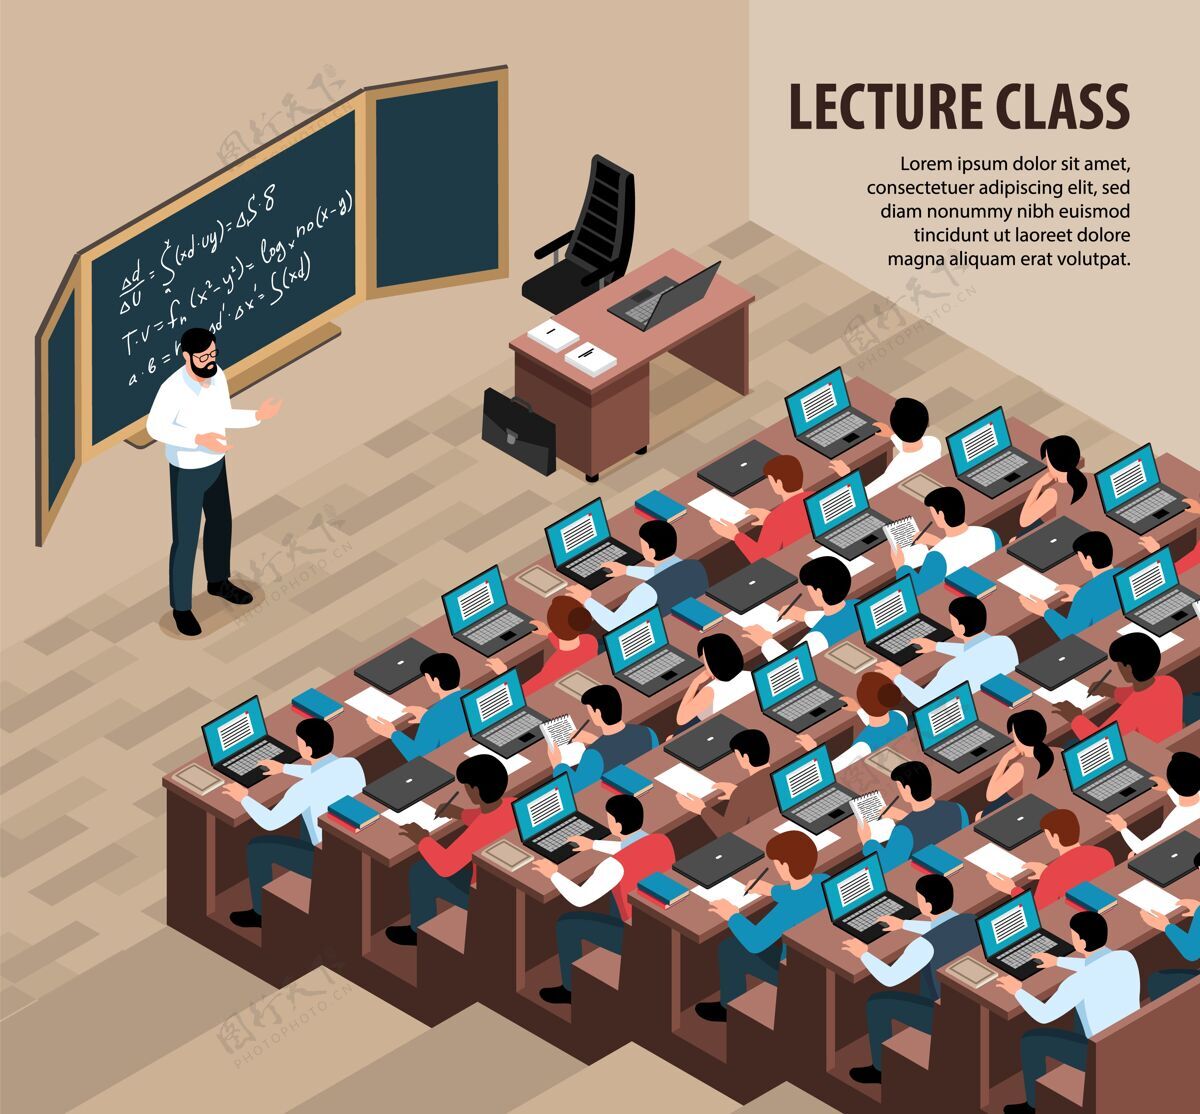 等距等轴测讲座课堂插图 室内风景教授在黑板前 学生拿着笔记本电脑学生黑板笔记本电脑